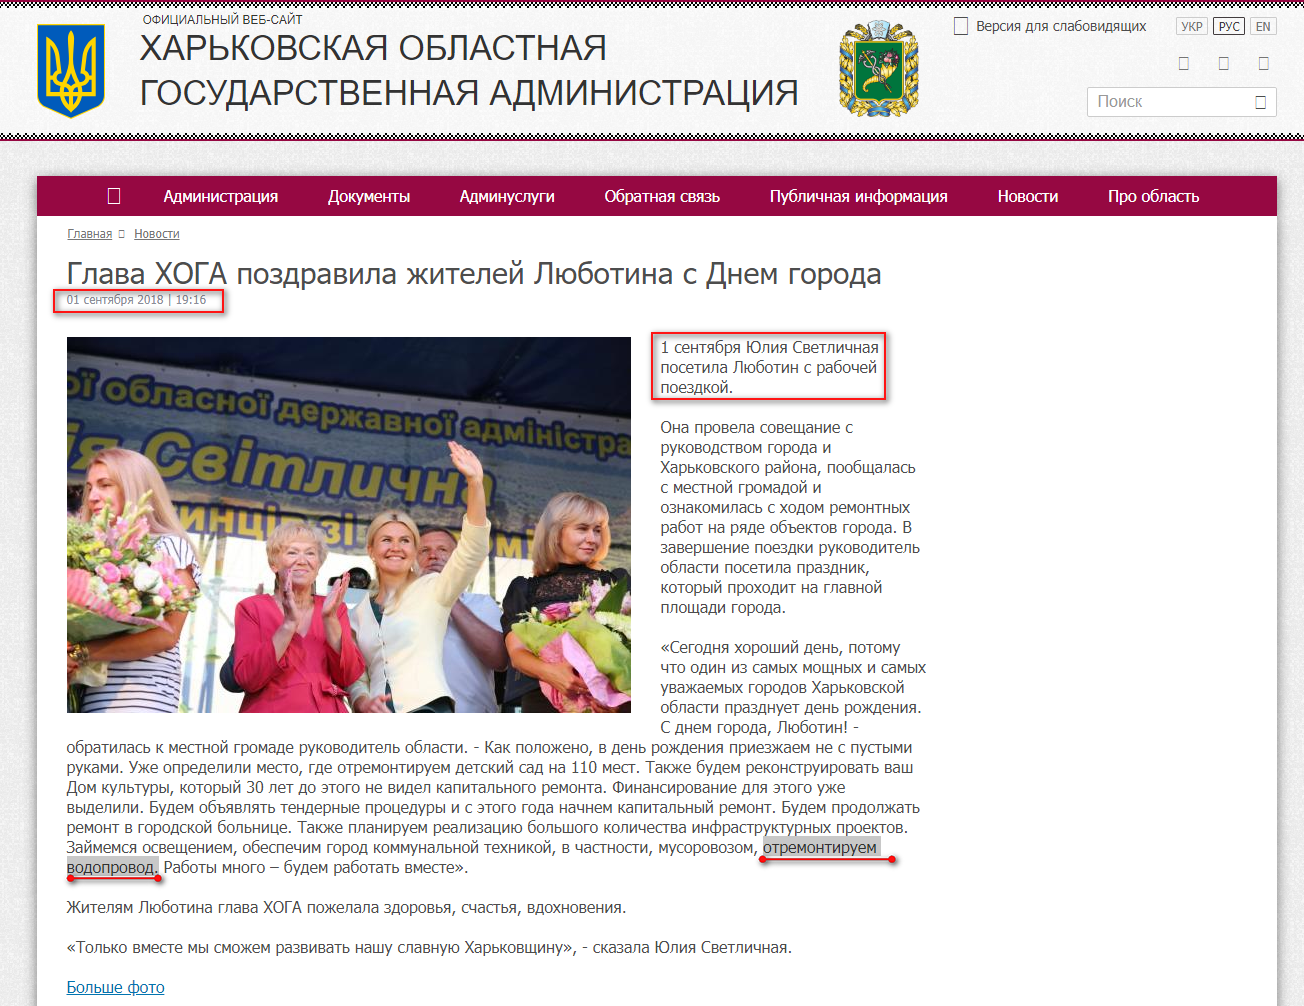 http://kharkivoda.gov.ua/ru/news/94608